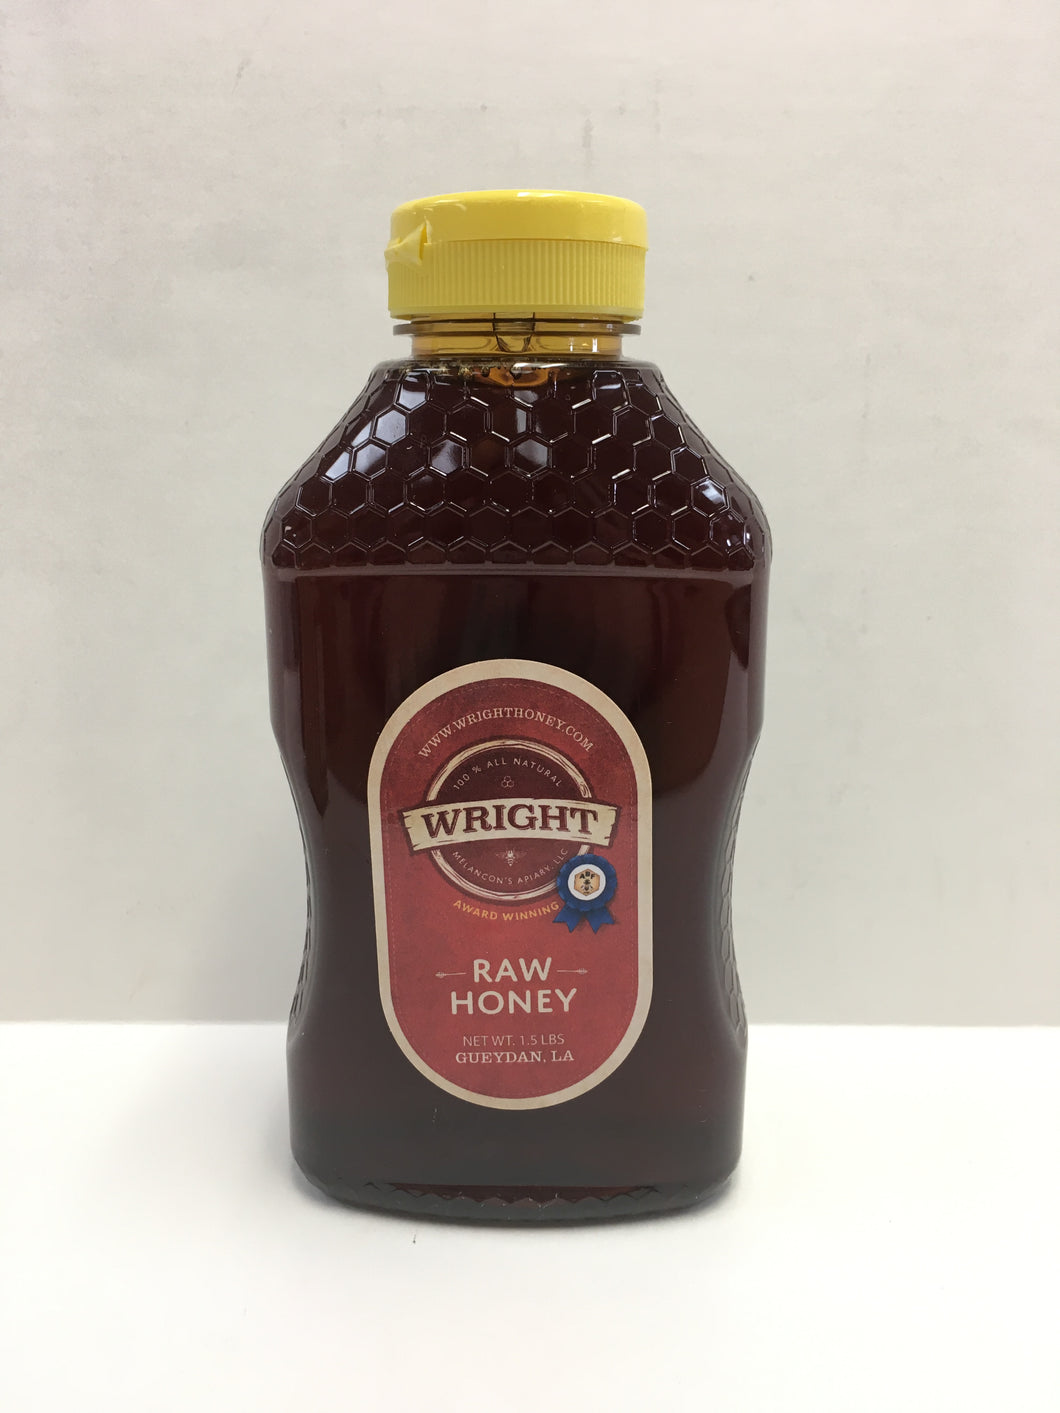 Wright Raw Honey 1.5 LBS